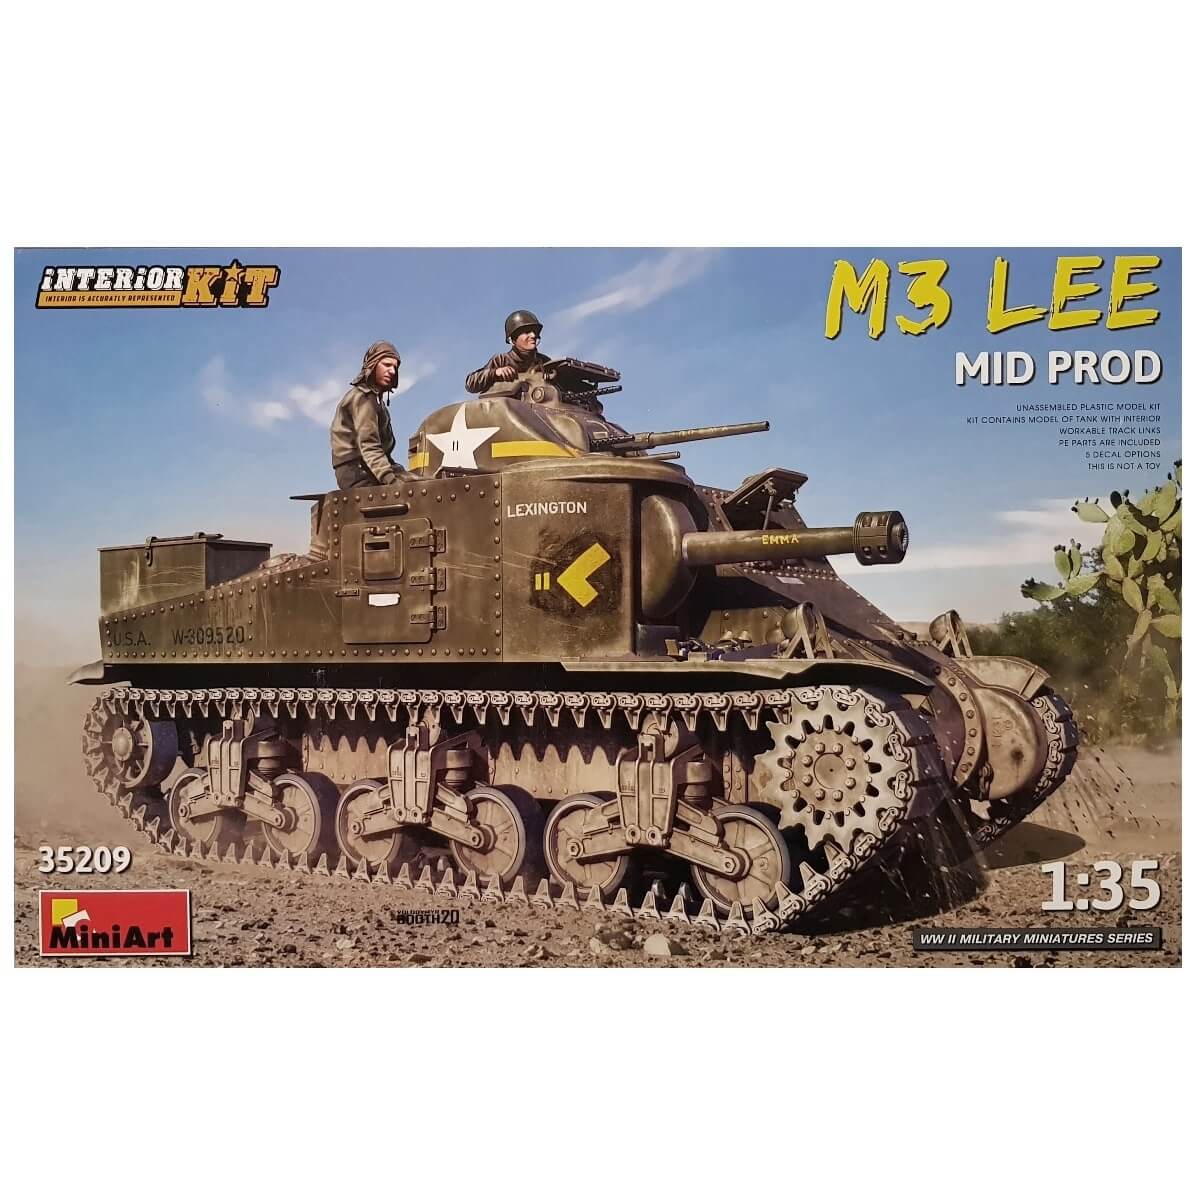 1:35 M3 Lee Mid Prod - Interior Kit - MINIART